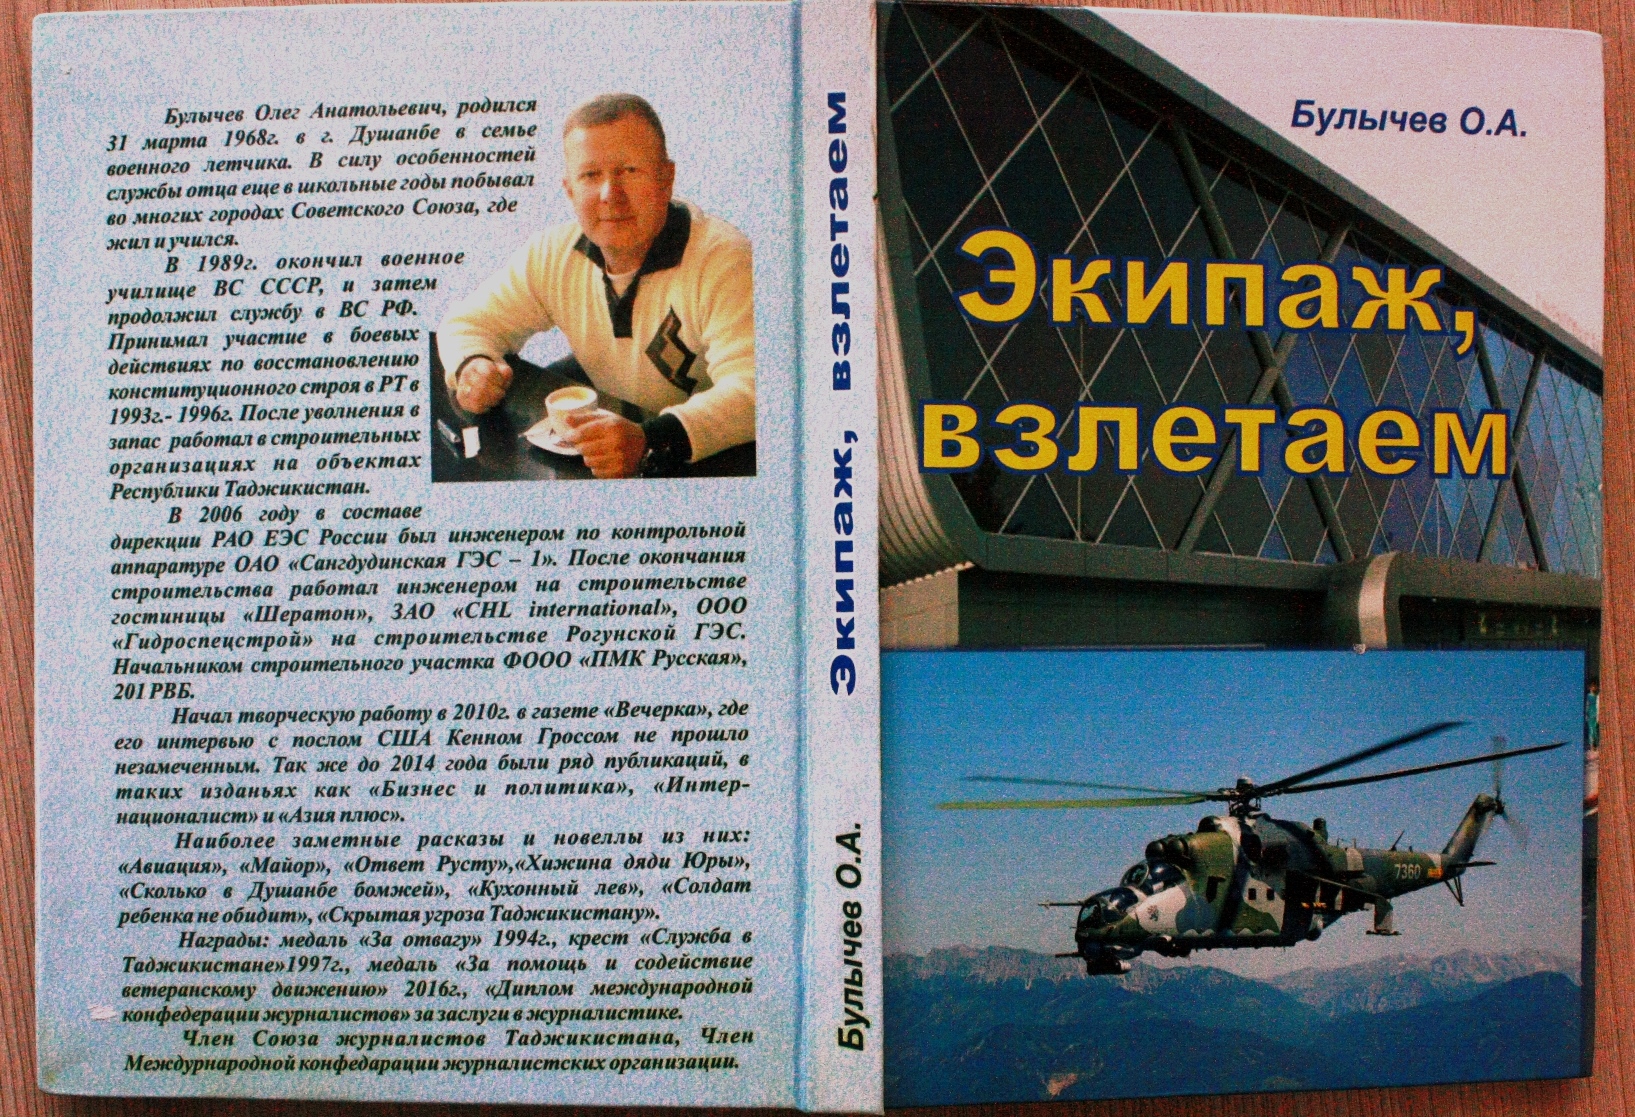 «Экипаж, взлетаем». В Таджикистане издана книга военного летчика